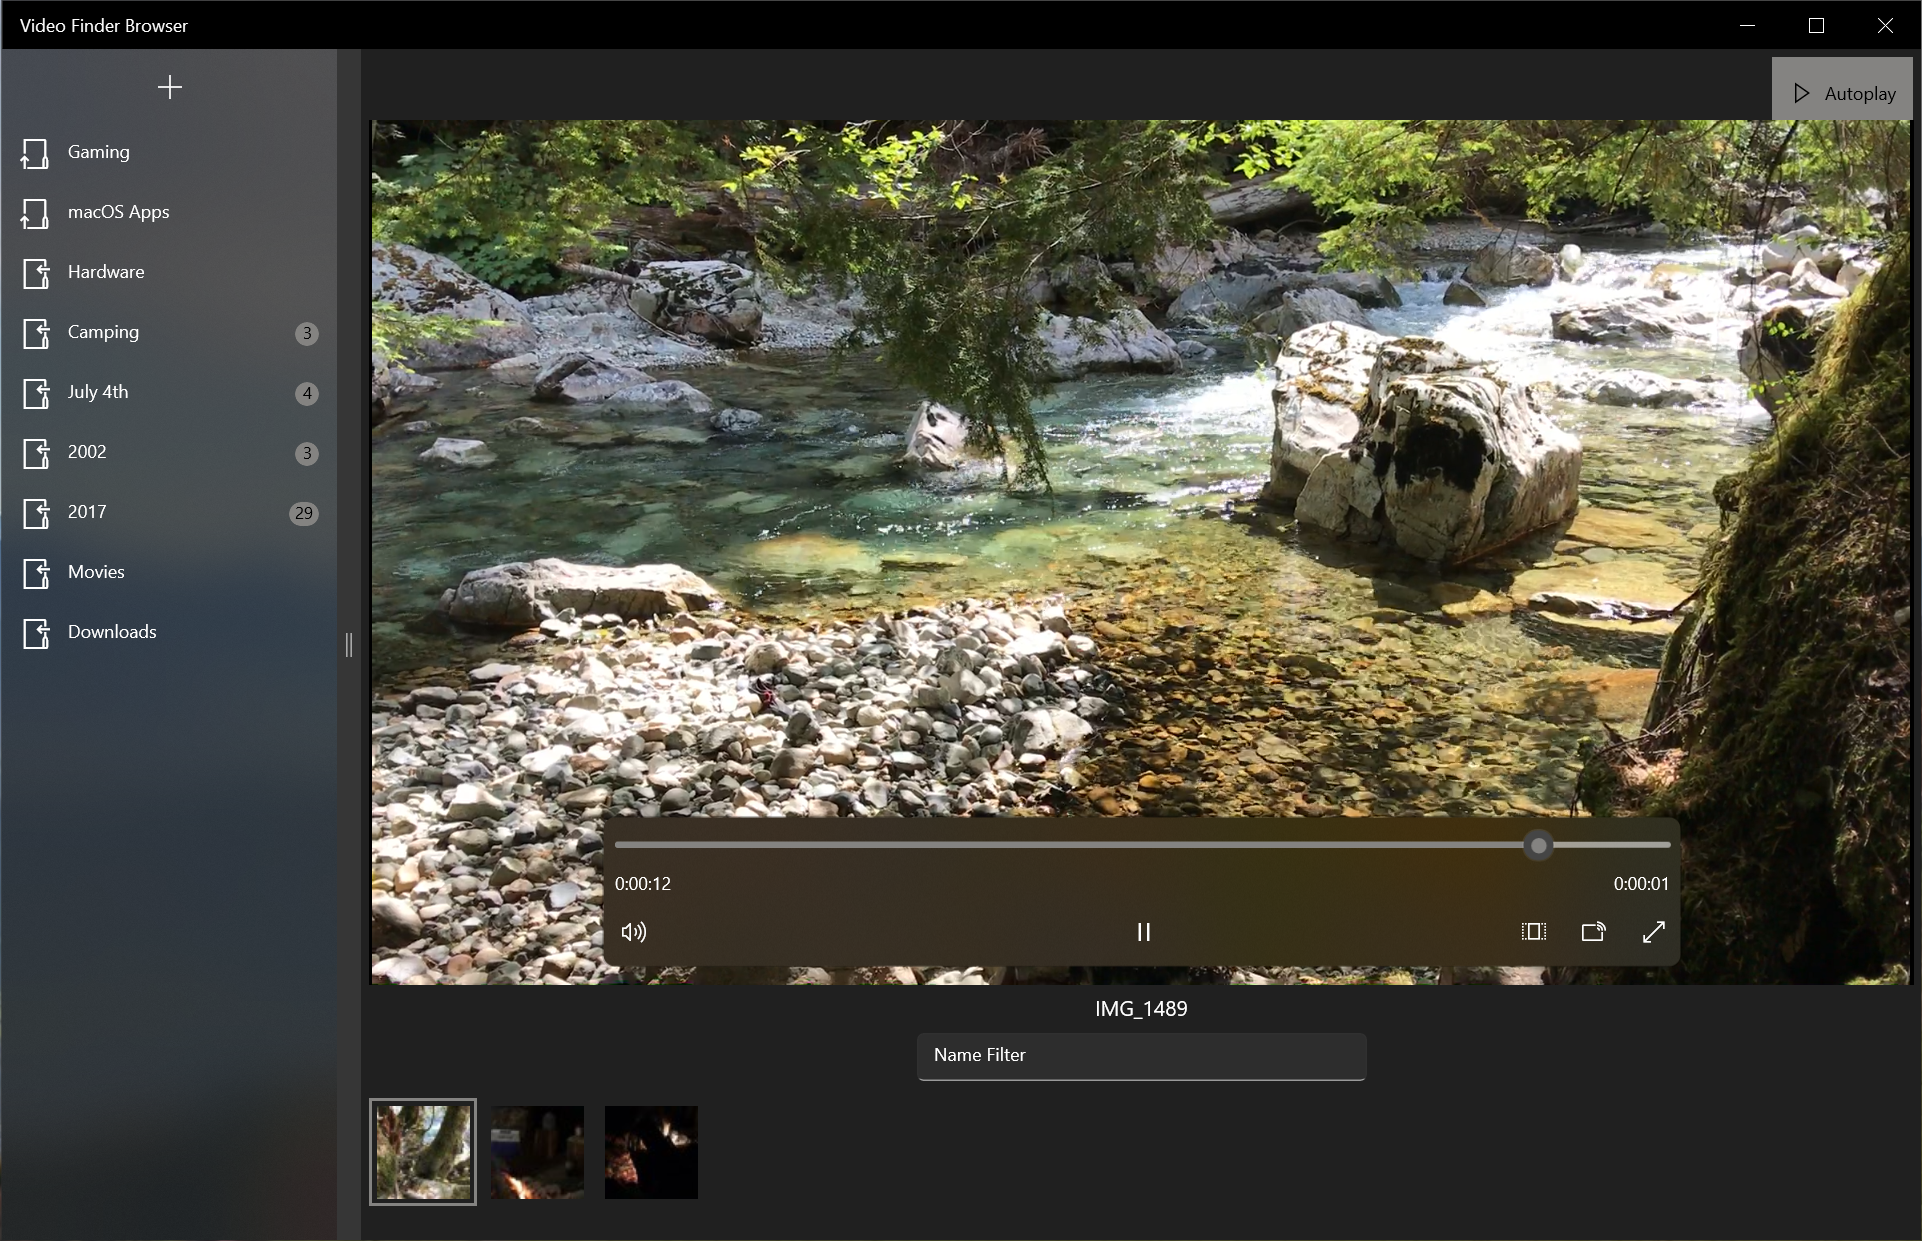 Video Finder Browser for Windows